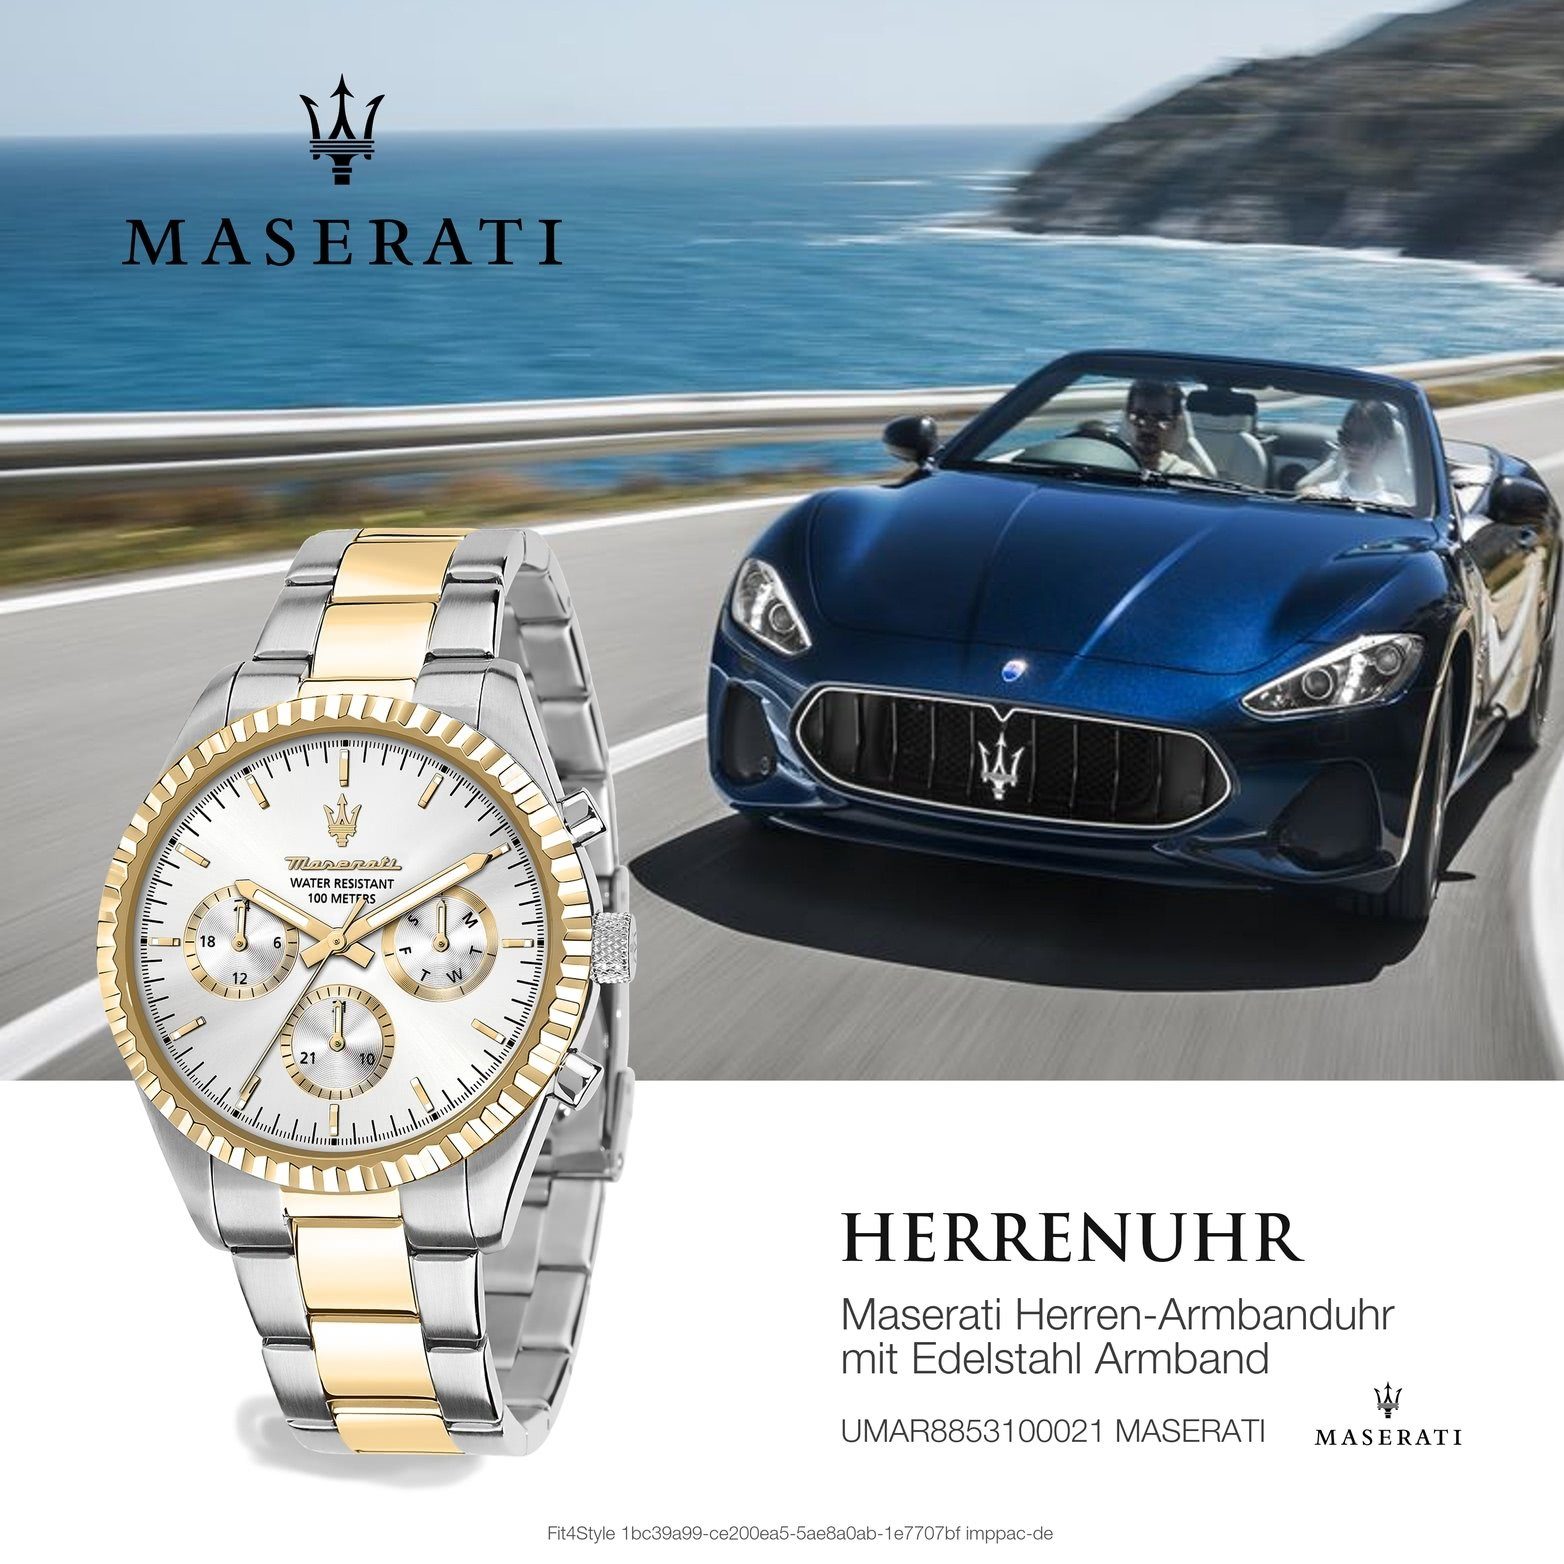 MASERATI Multifunktionsuhr Maserati Edelstahl Multifunktion, Herrenuhr Edelstahlarmband, silber rundes groß (ca 51,5x43mm) Gehäuse